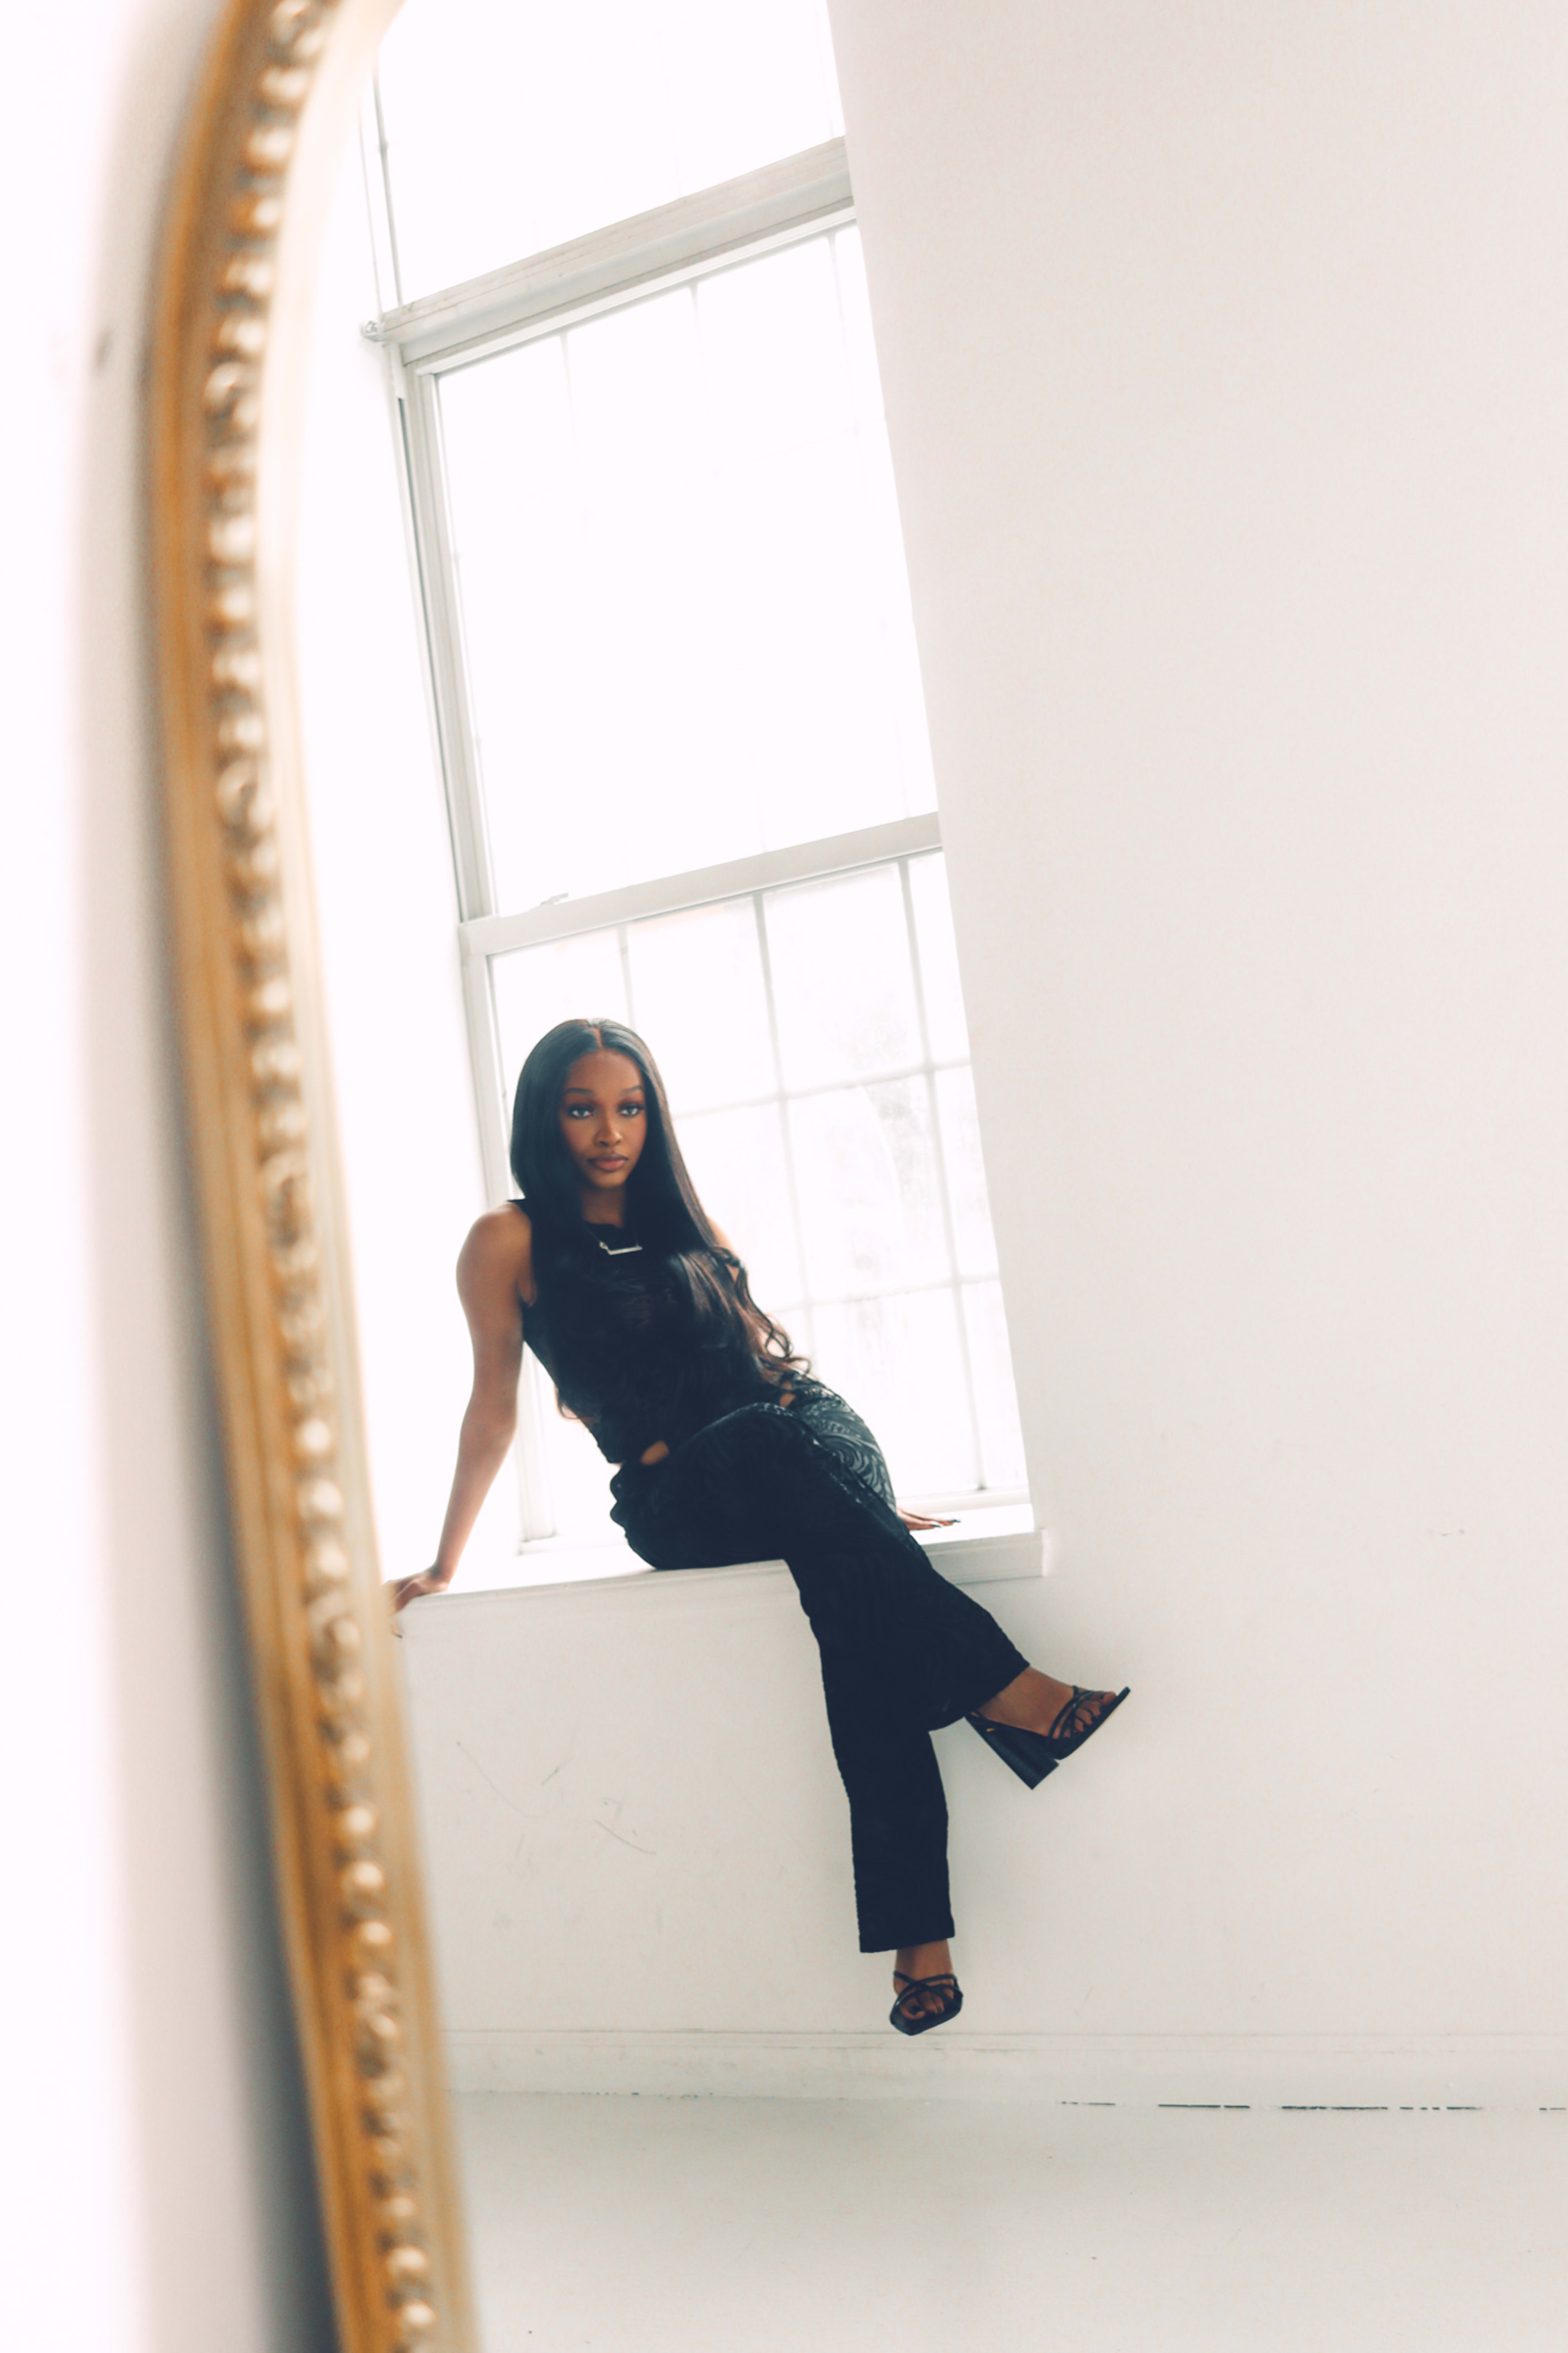 Ein minimalistisches Fotoshooting einer Frau, die auf einem schwarzen Sims vor einem weißen Spiegel sitzt.